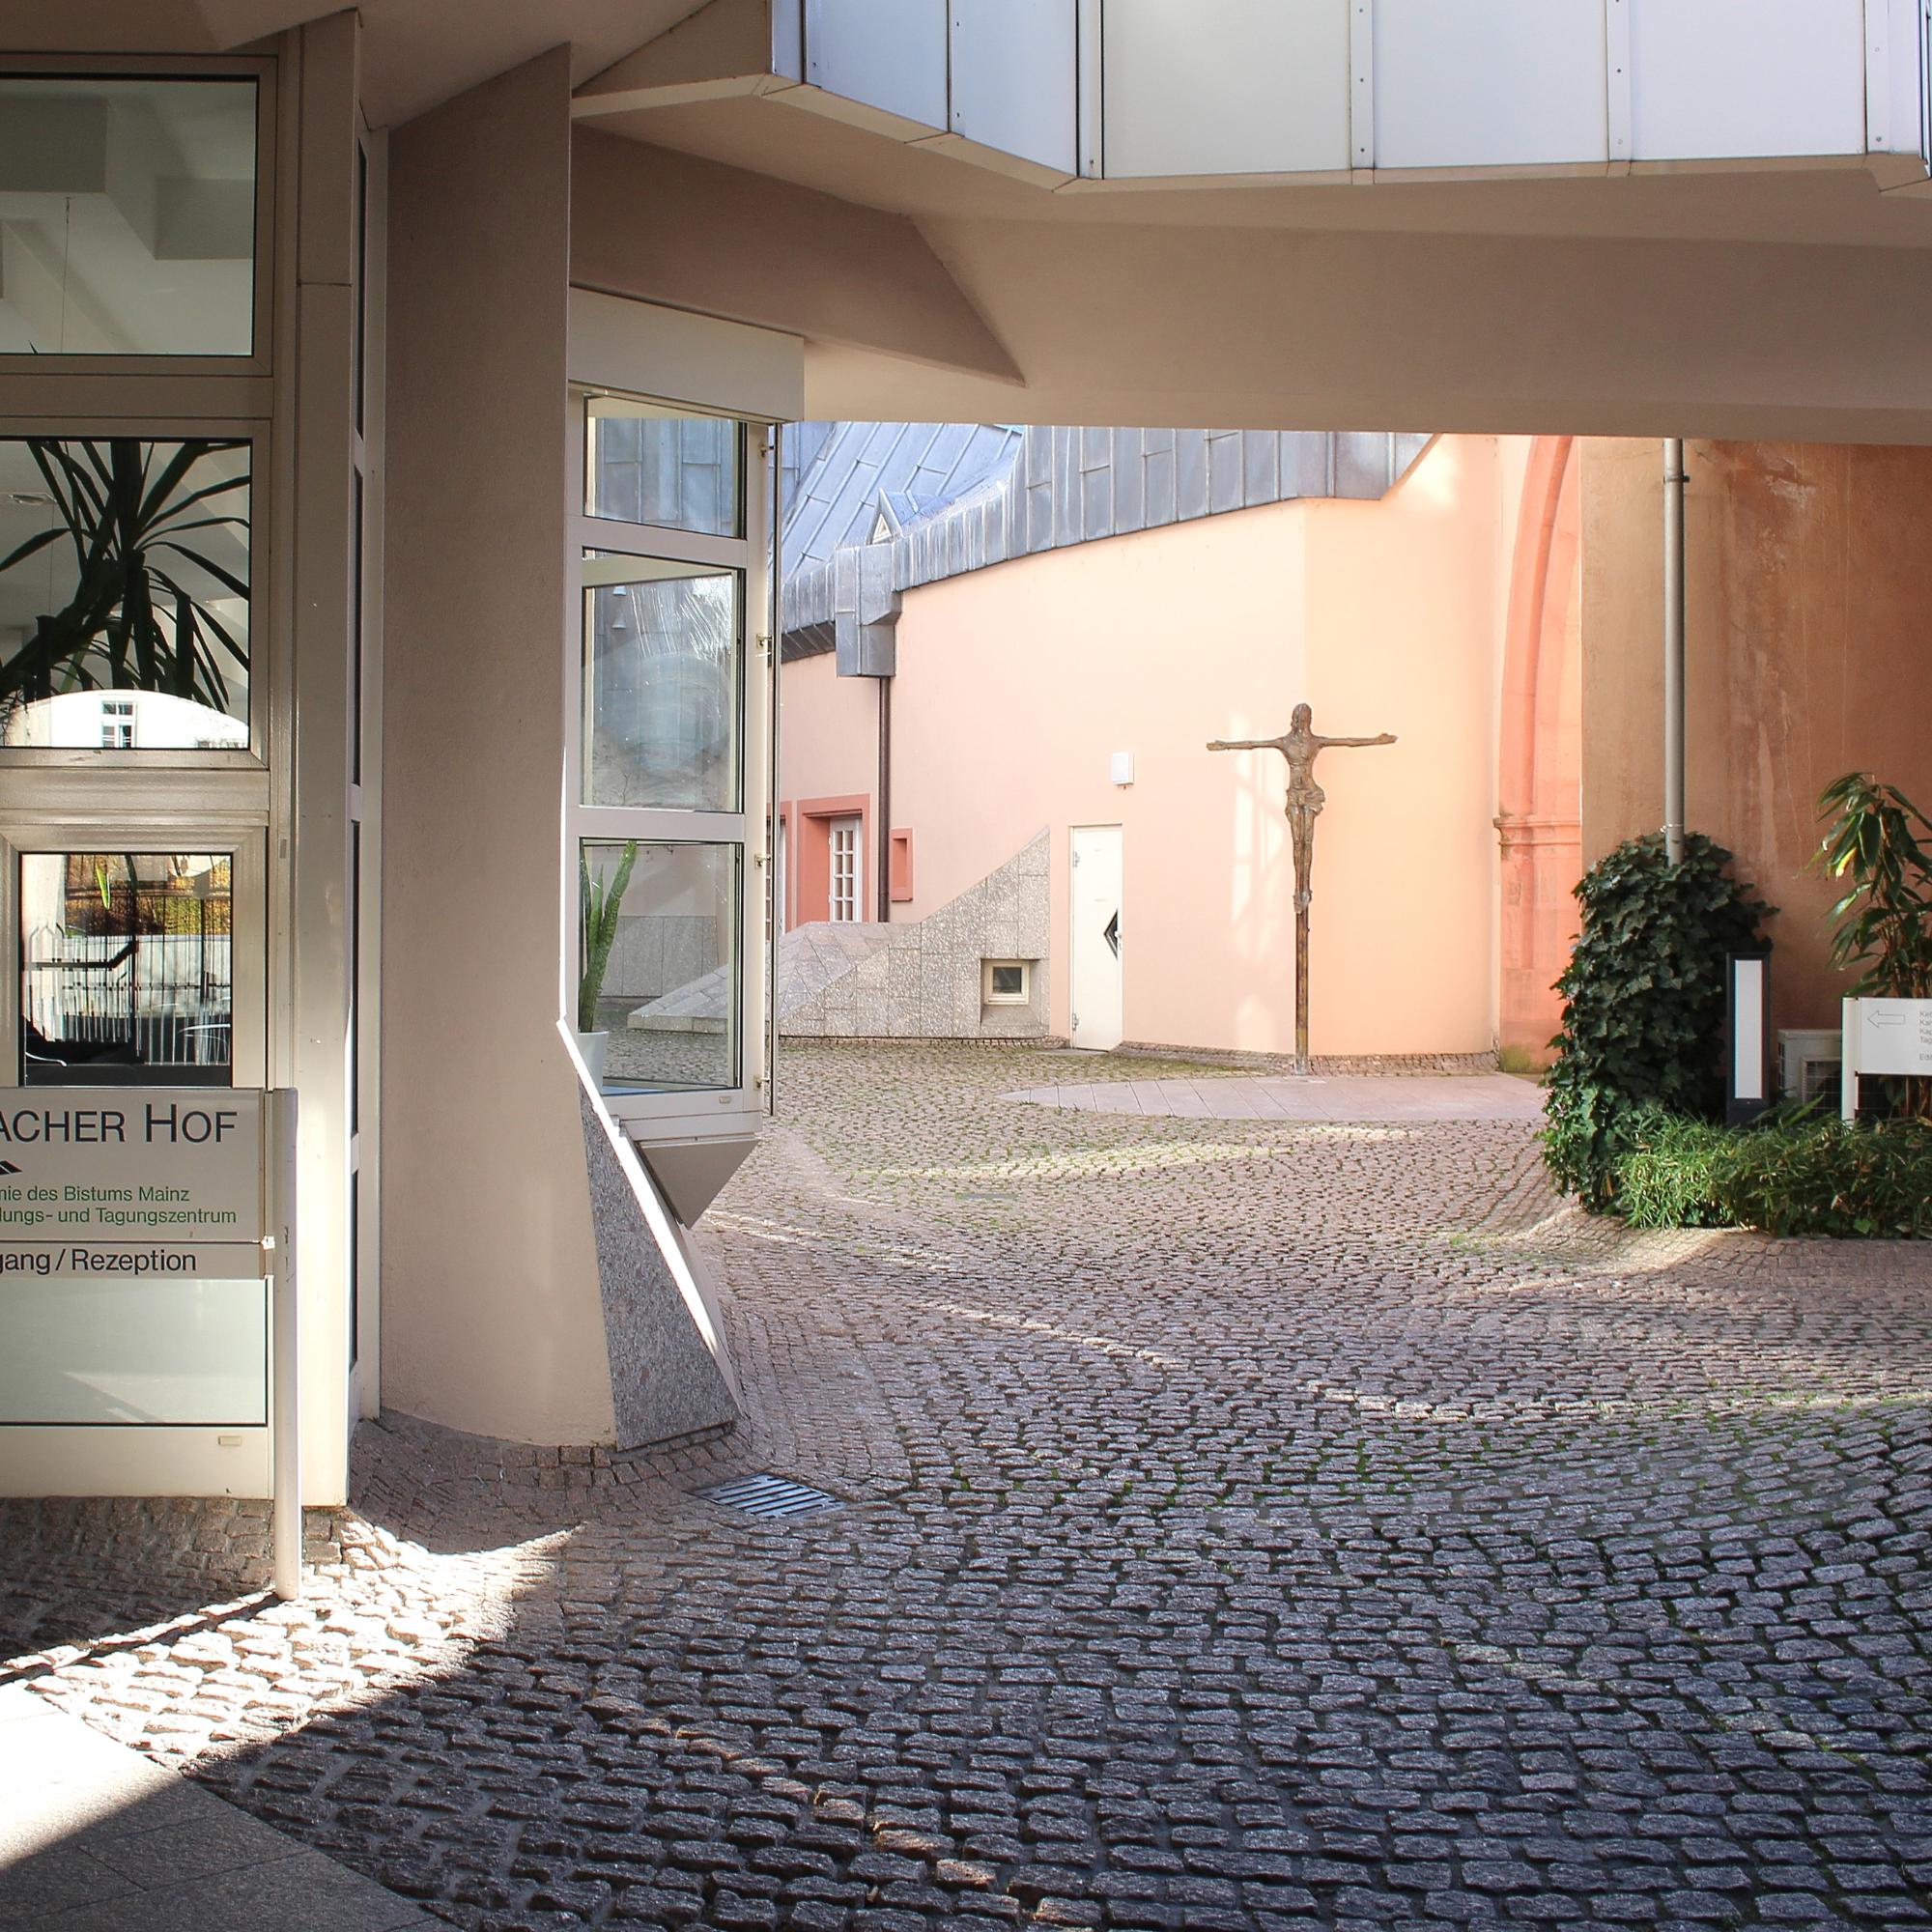 Der Erbacher Hof ist das Bildungs- und Tagungszentrum des Bistums in Mainz.